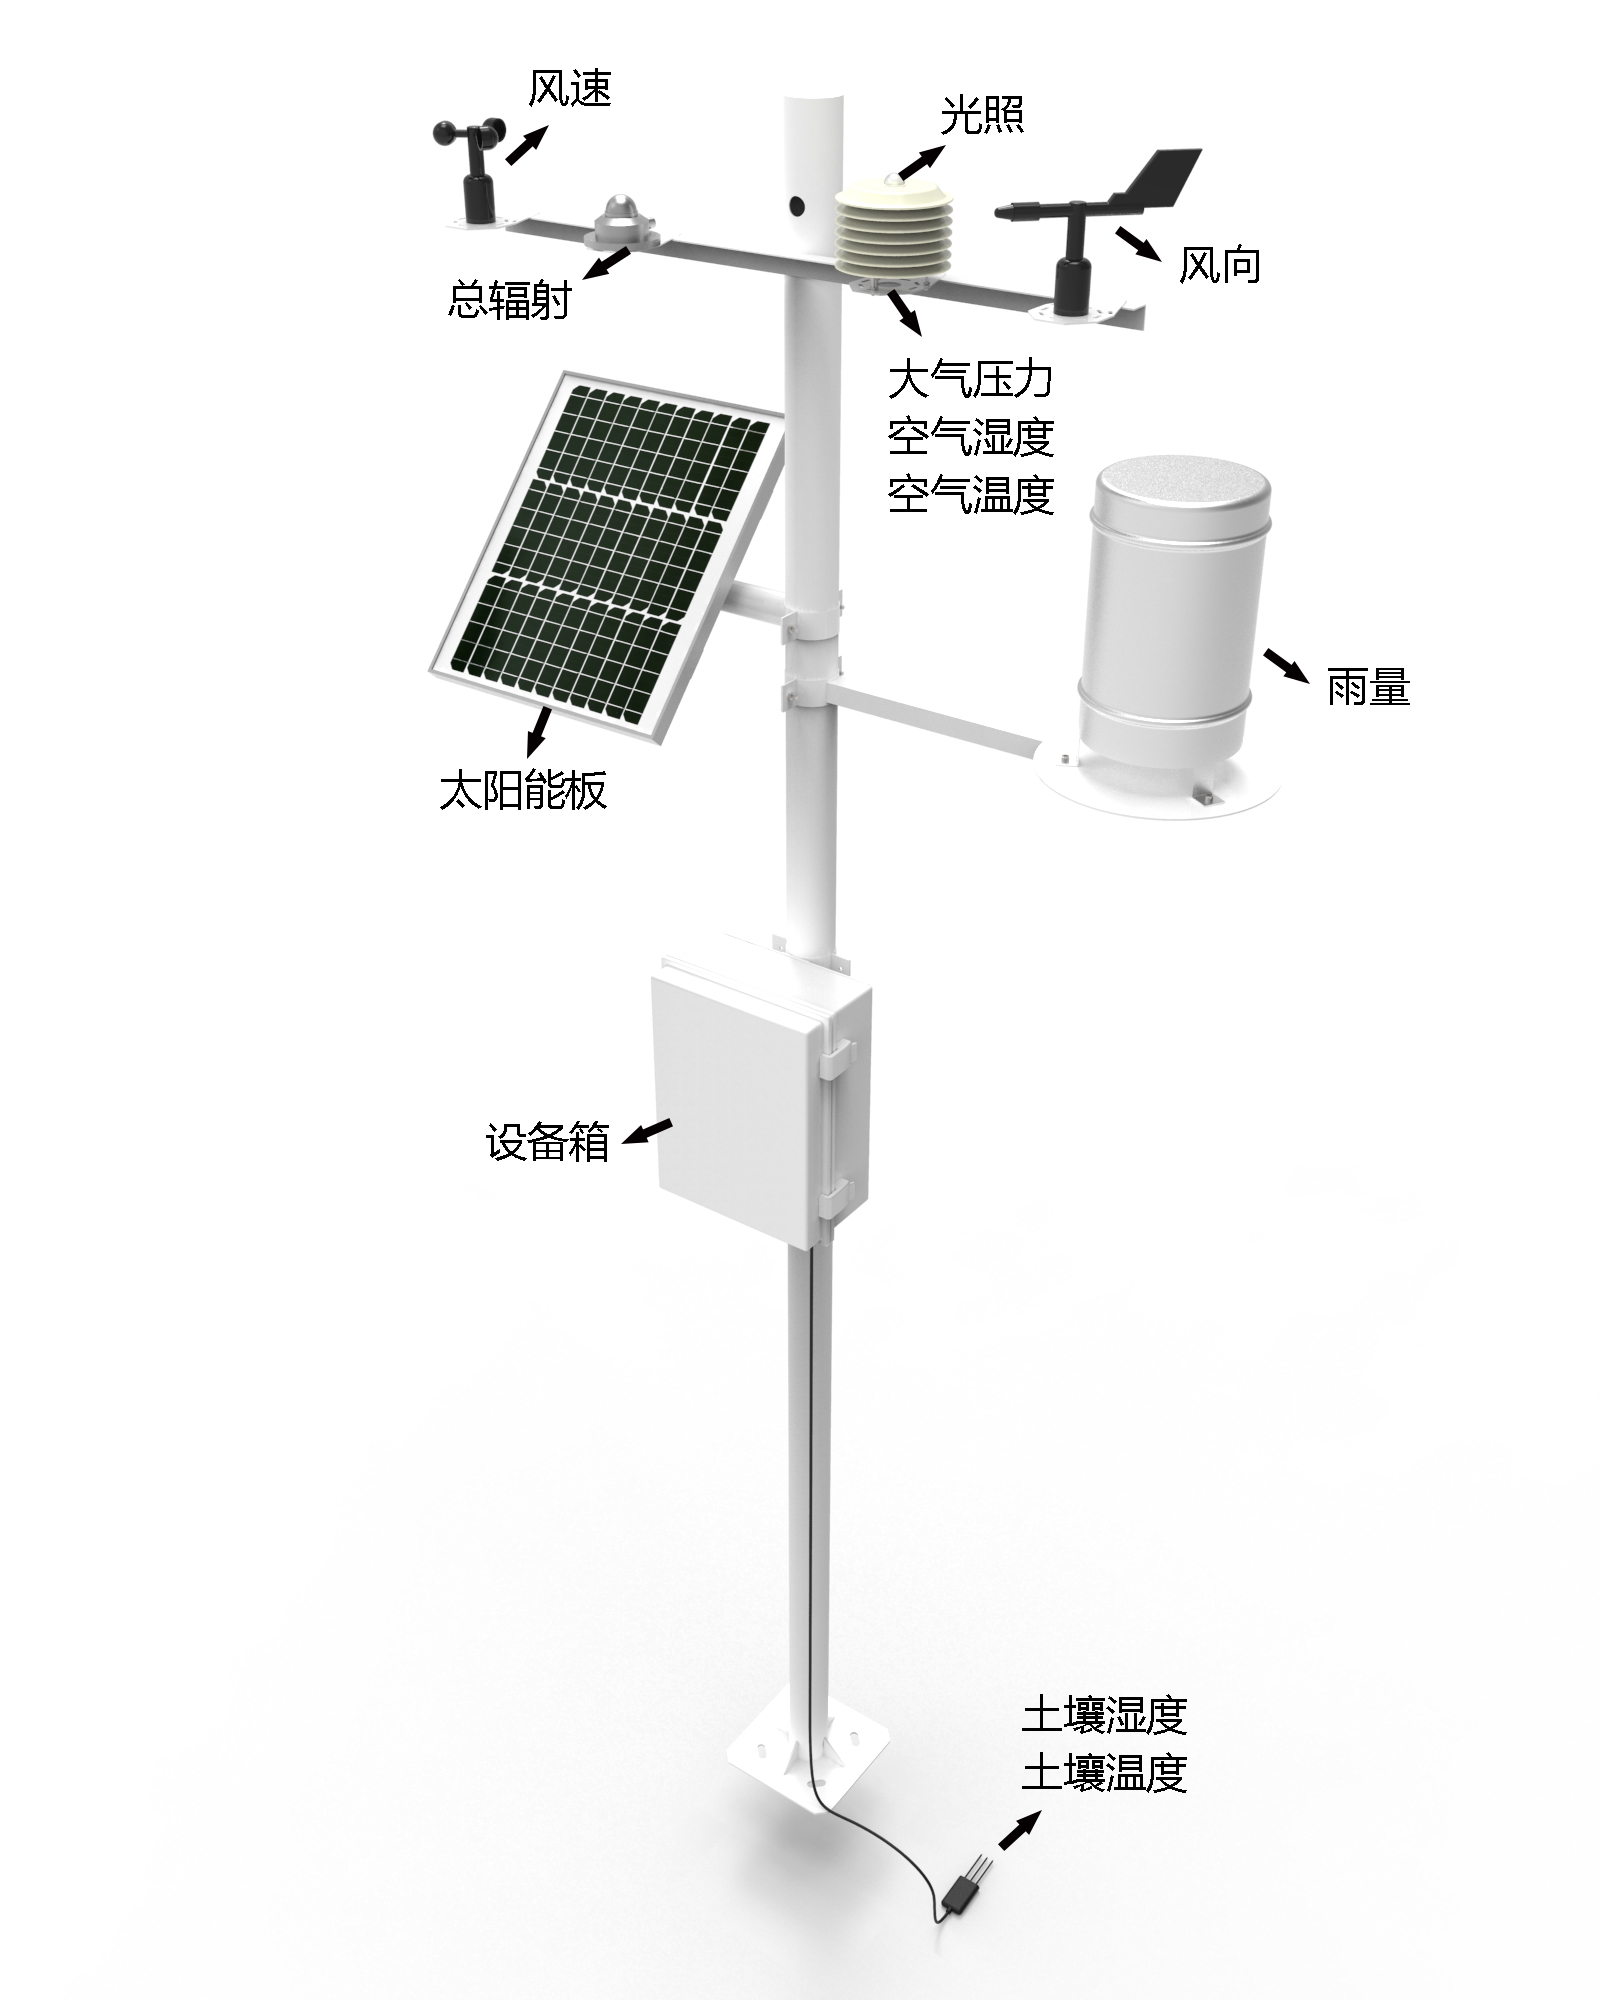 农业气象观测站产品结构图